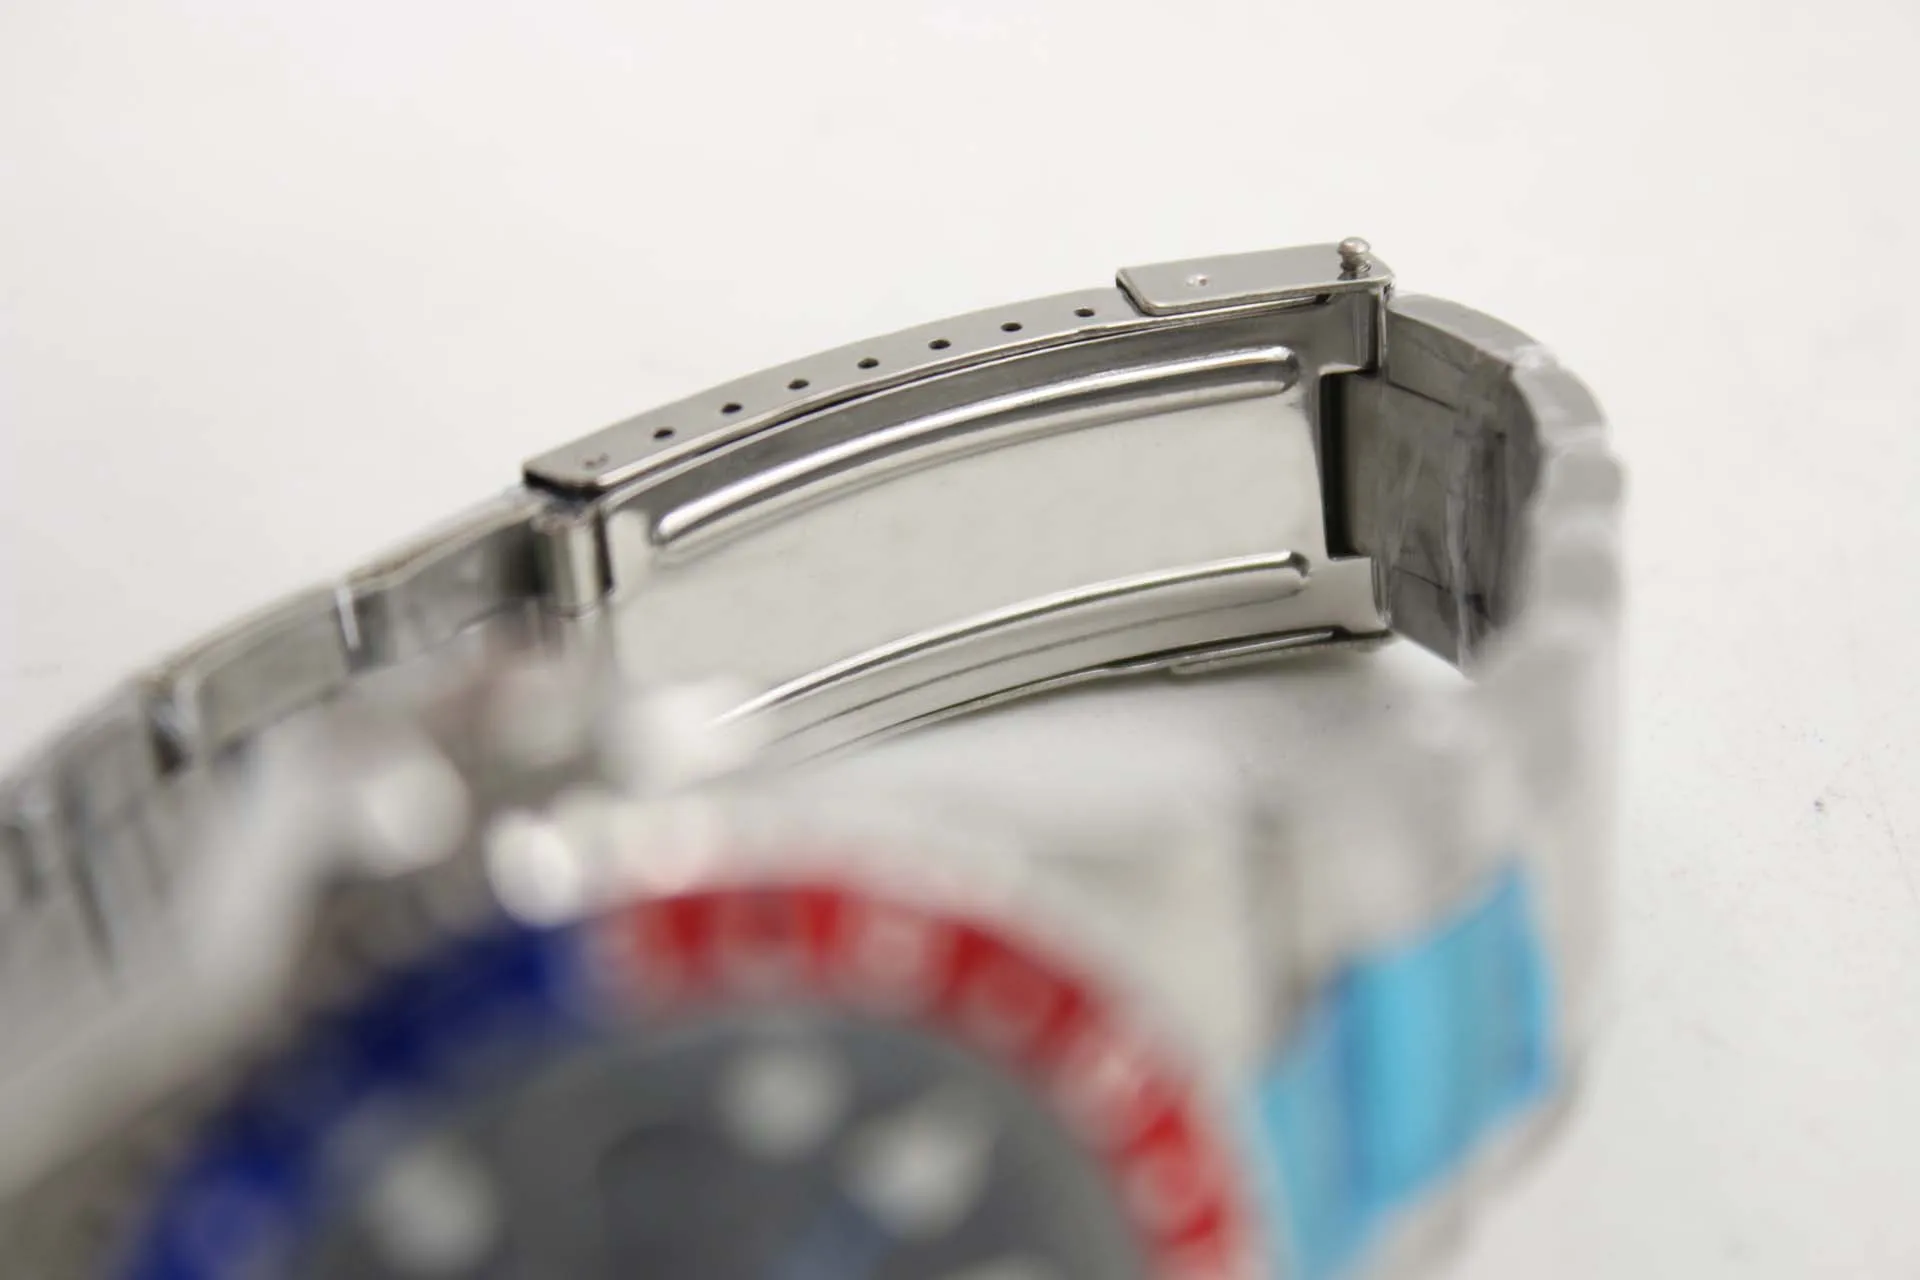 Orologio meccanico da uomo 116710 business casual moderno argento bianco cassa in acciaio inossidabile blu bordo rosso quadrante nero calendario a 4 pin2522